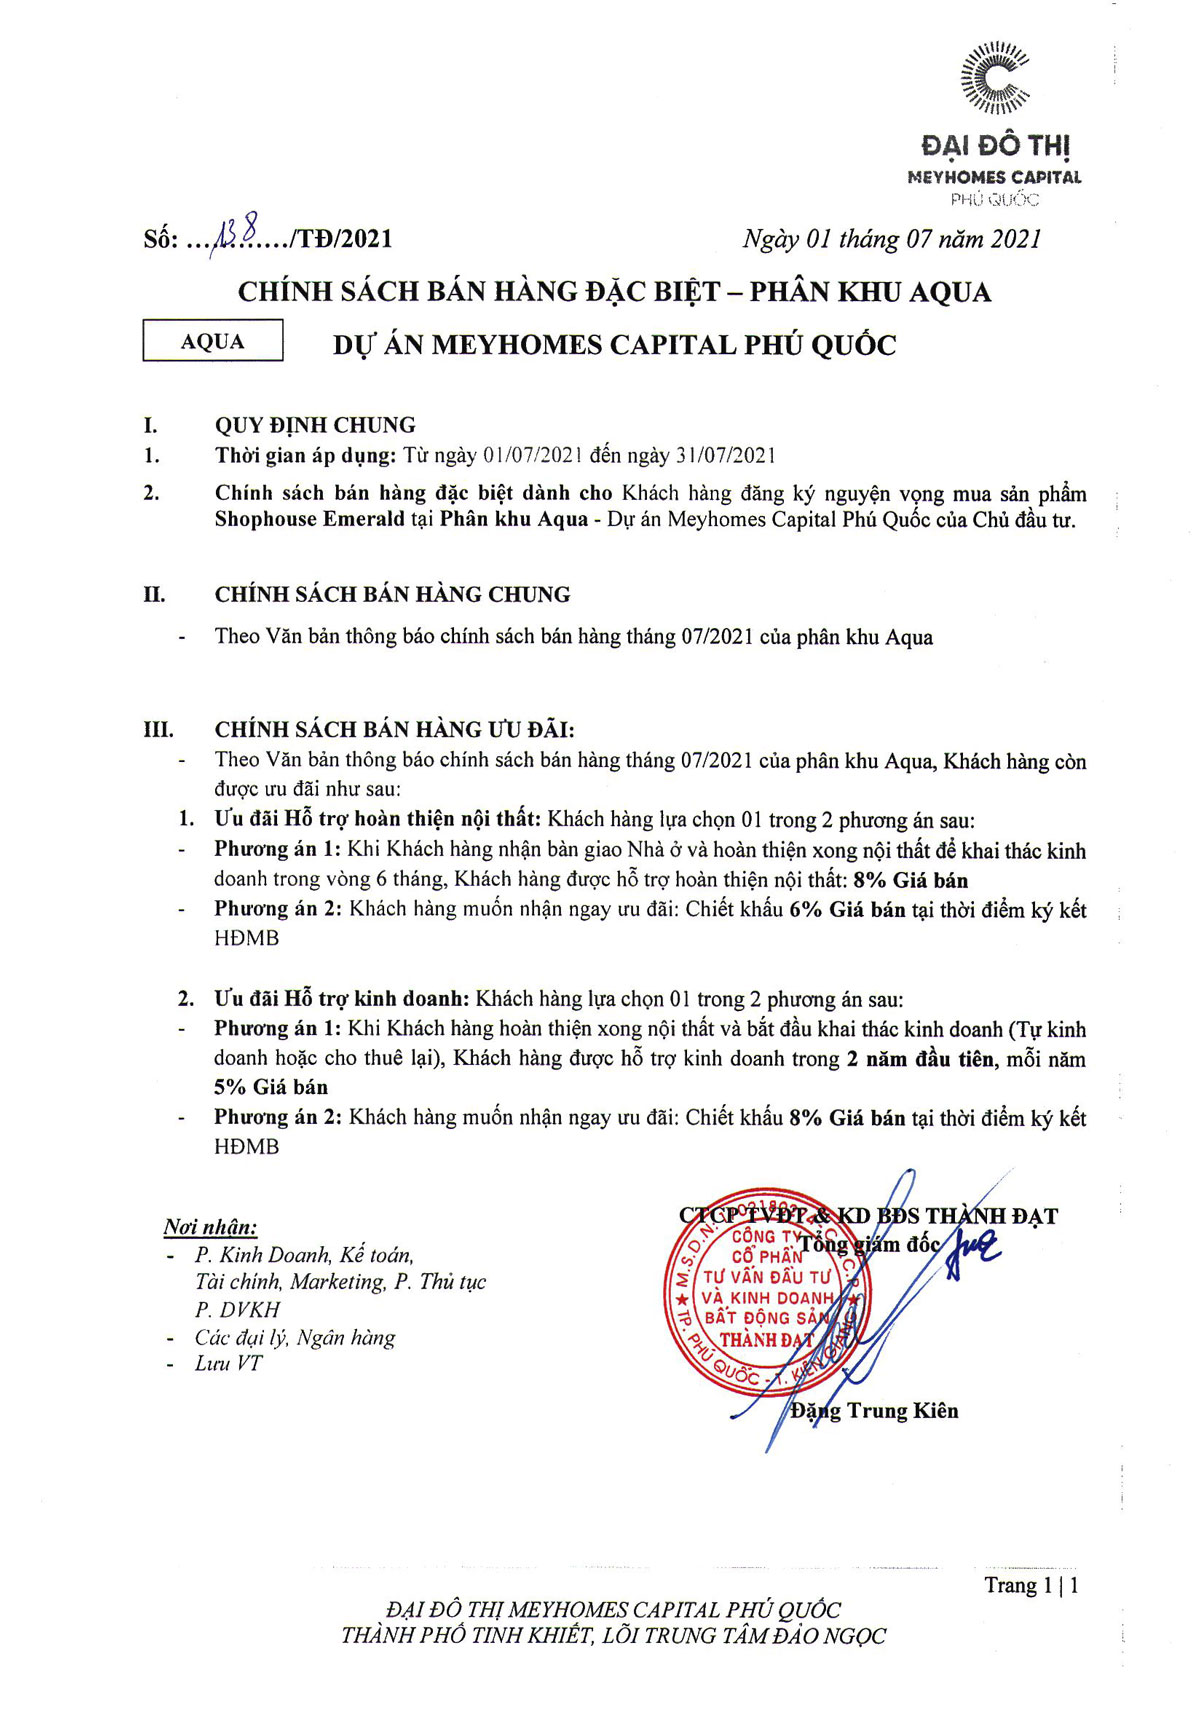 CSBH phân khu Aqua Meyhomes Capital Phú Quốc tháng 7/2021